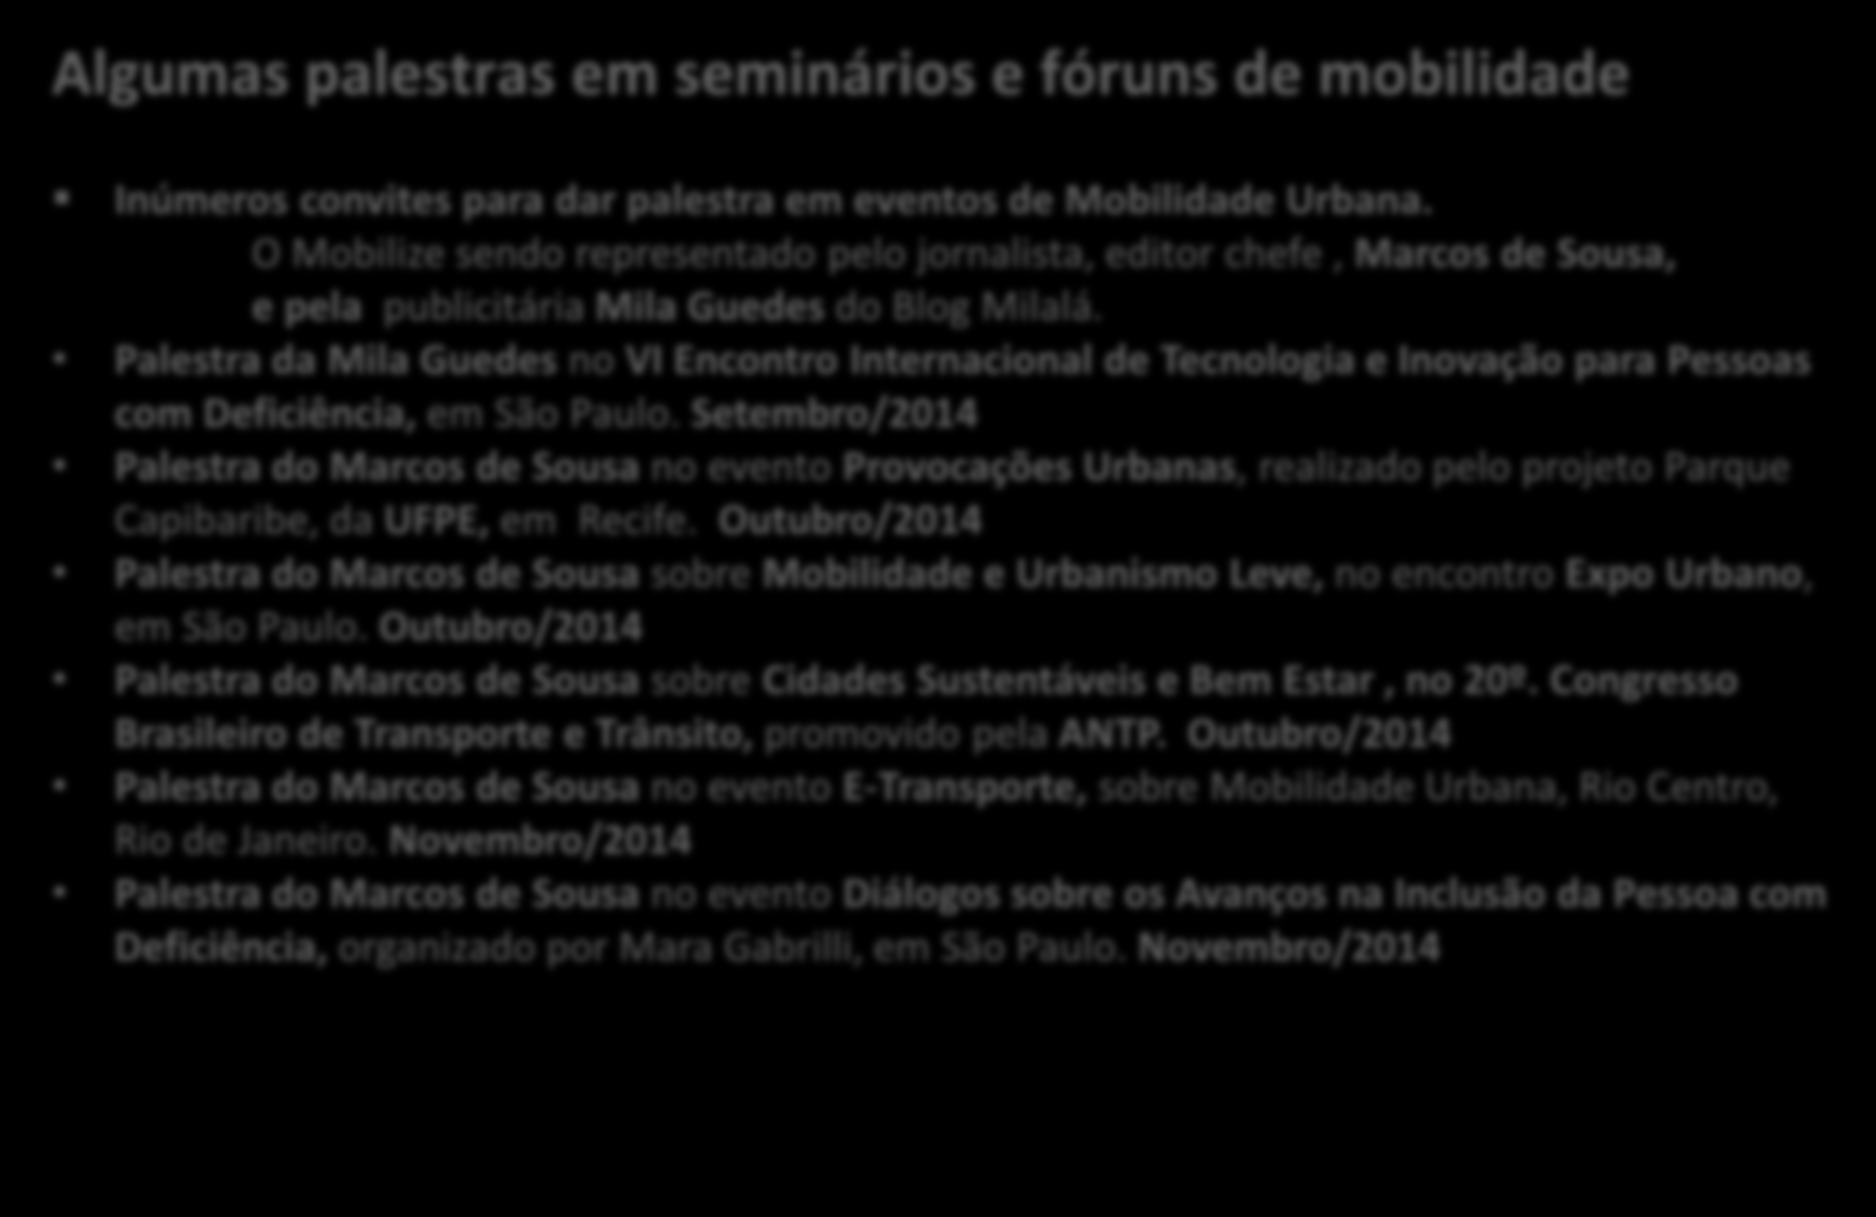 Mobilize Brasil: Atividades realizadas Algumas palestras em seminários e fóruns de mobilidade Inúmeros convites para dar palestra em eventos de Mobilidade Urbana.